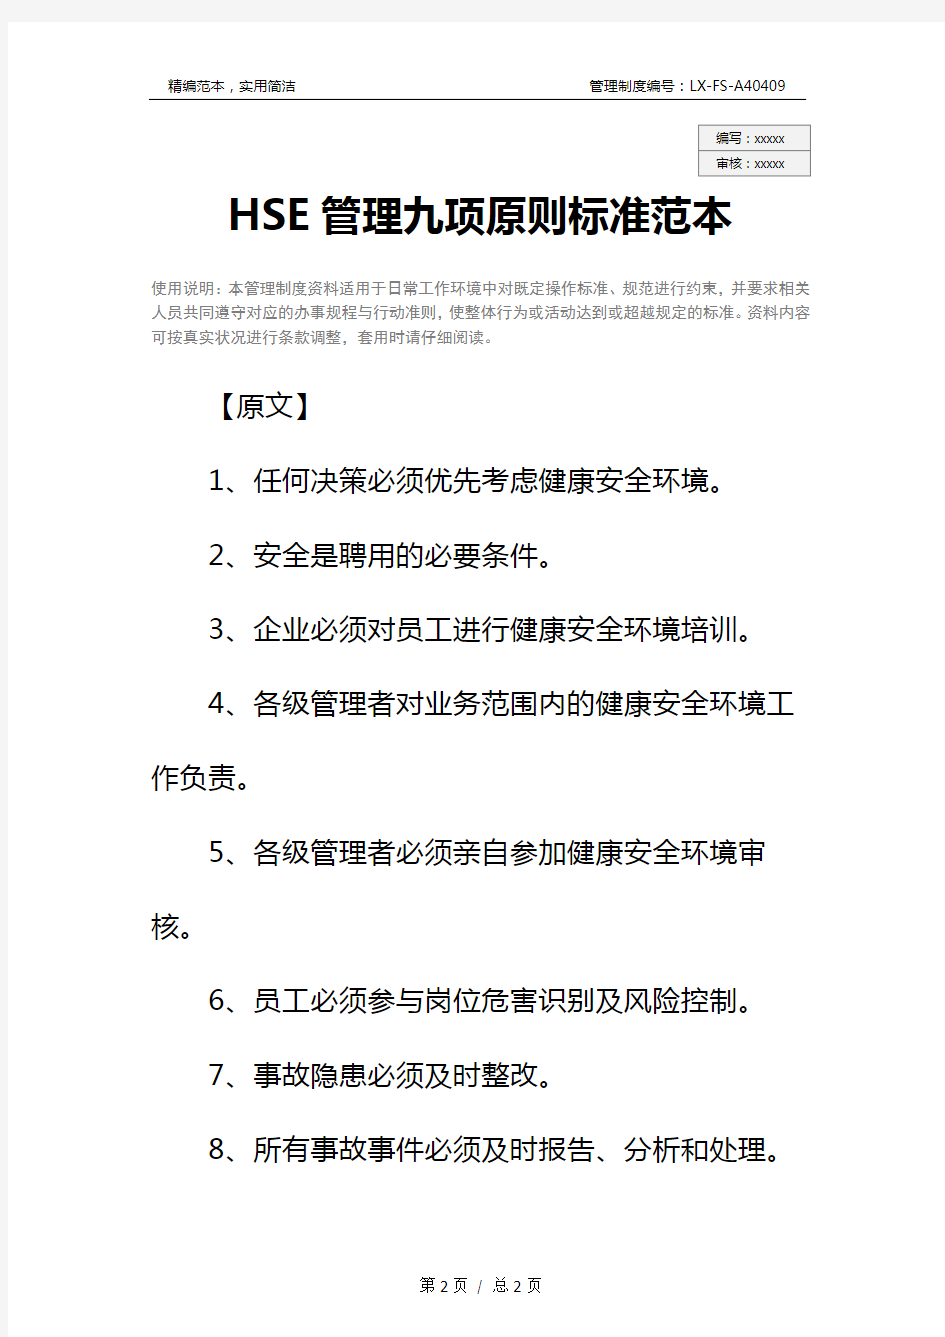 HSE管理九项原则标准范本